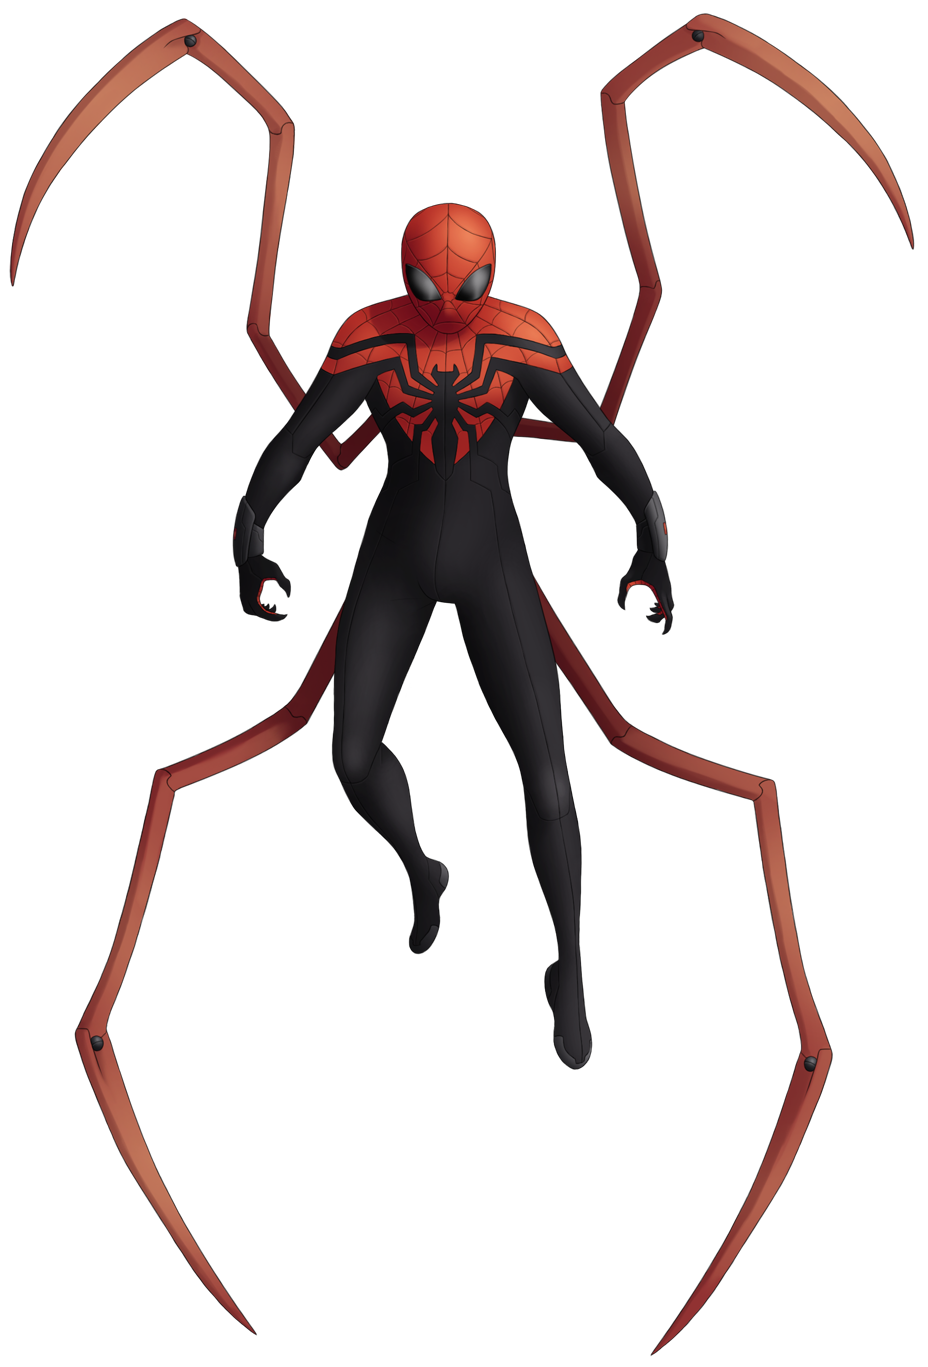 121--Superior Spider-Man by Green-Mamba on DeviantArt